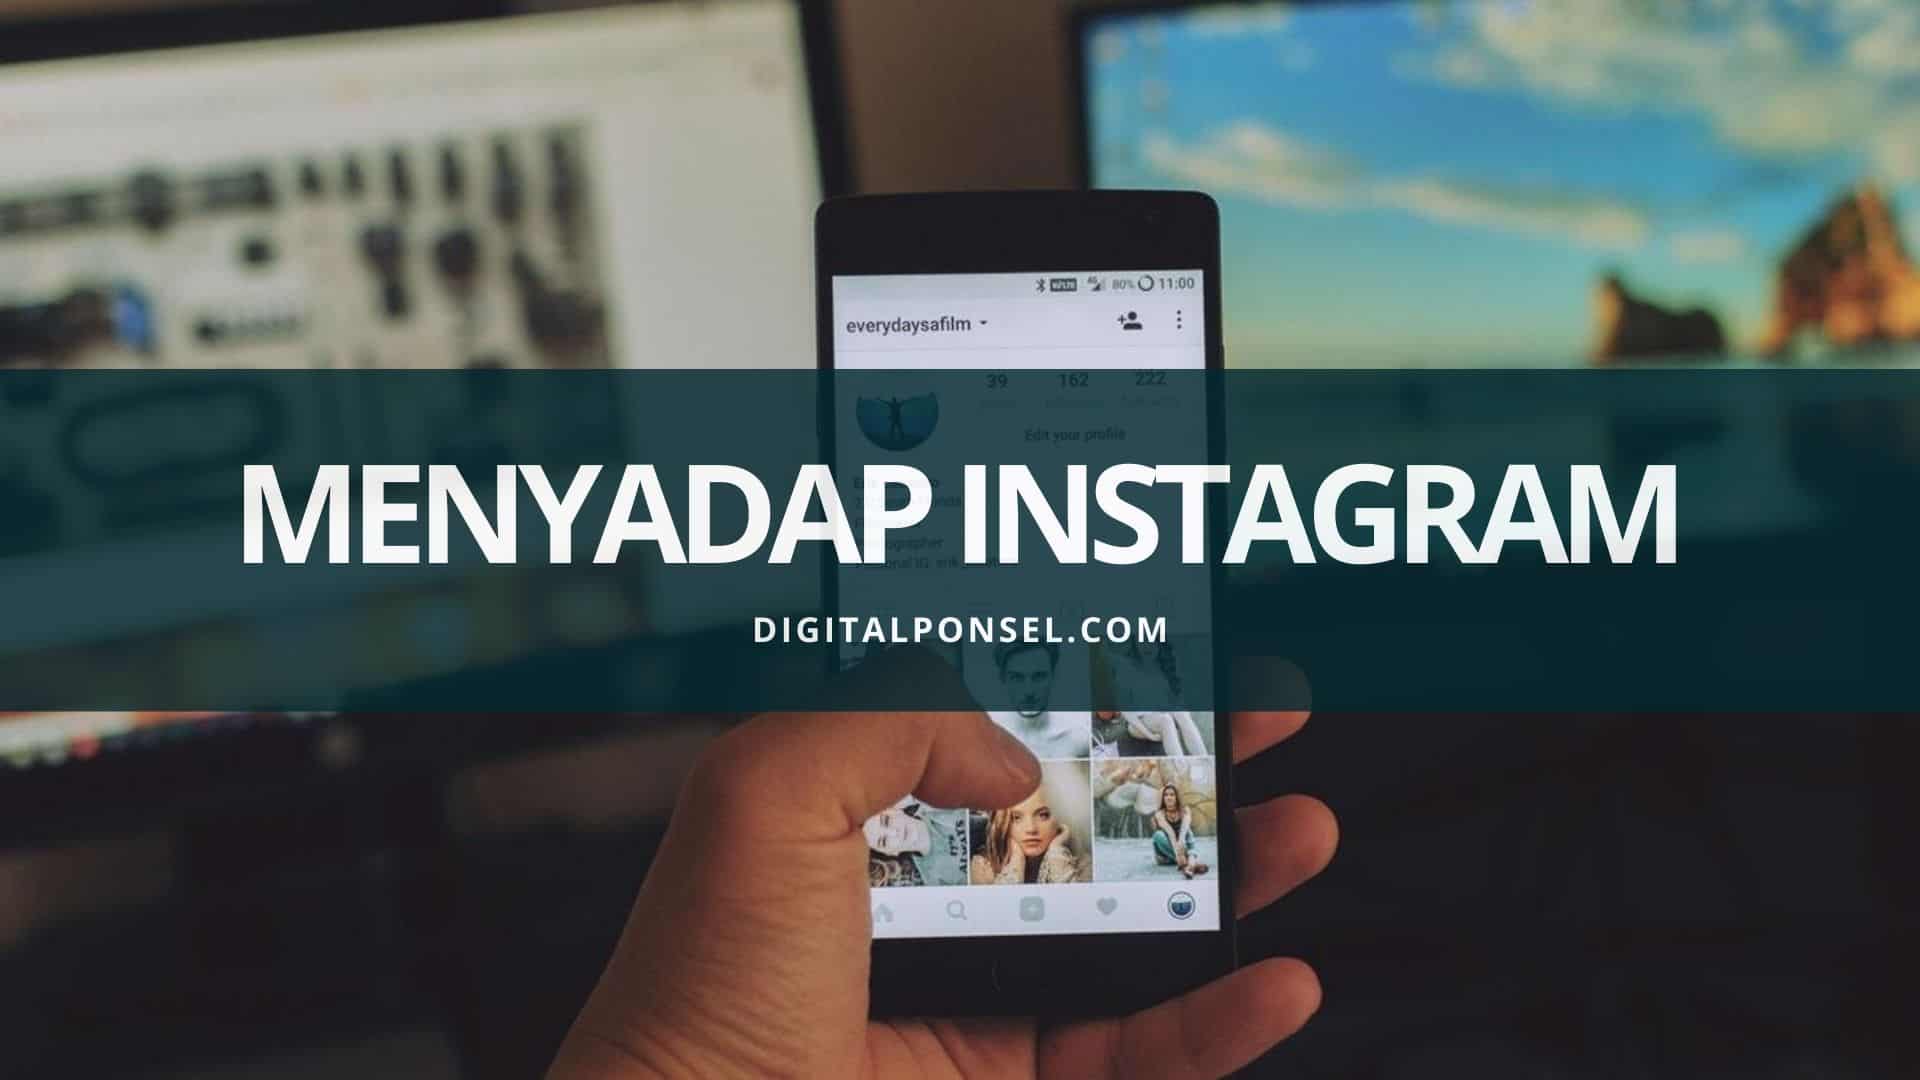 Get Your Instagram Hack Aplikasi. Cara Mudah Menyadap Instagram dengan Aplikasi